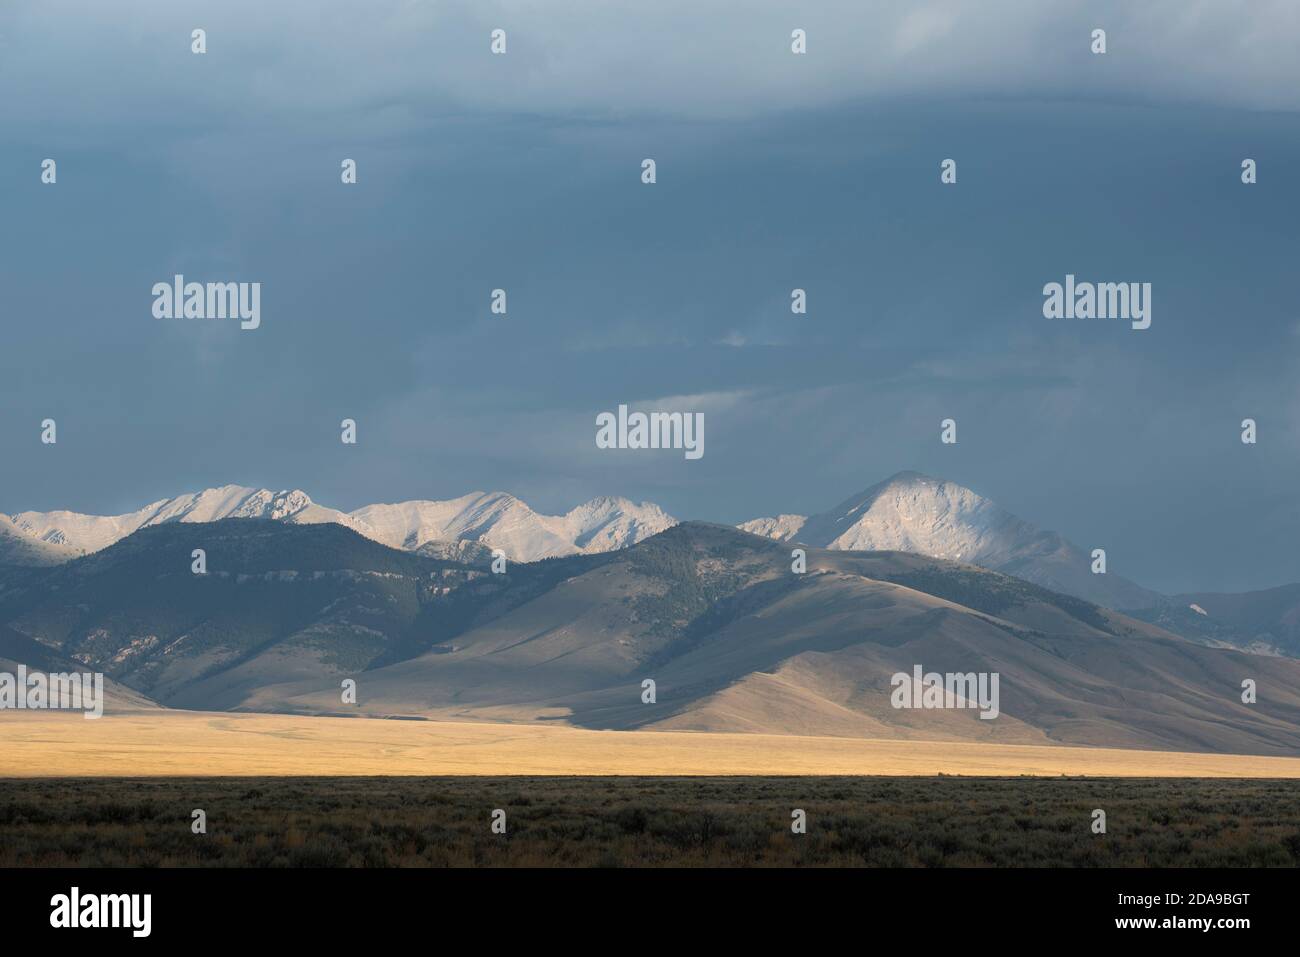 La luz del sol de la mañana brilla en el sur de Lemhi Range, incluyendo Diamond Peak (derecha), en Idaho. Foto de stock